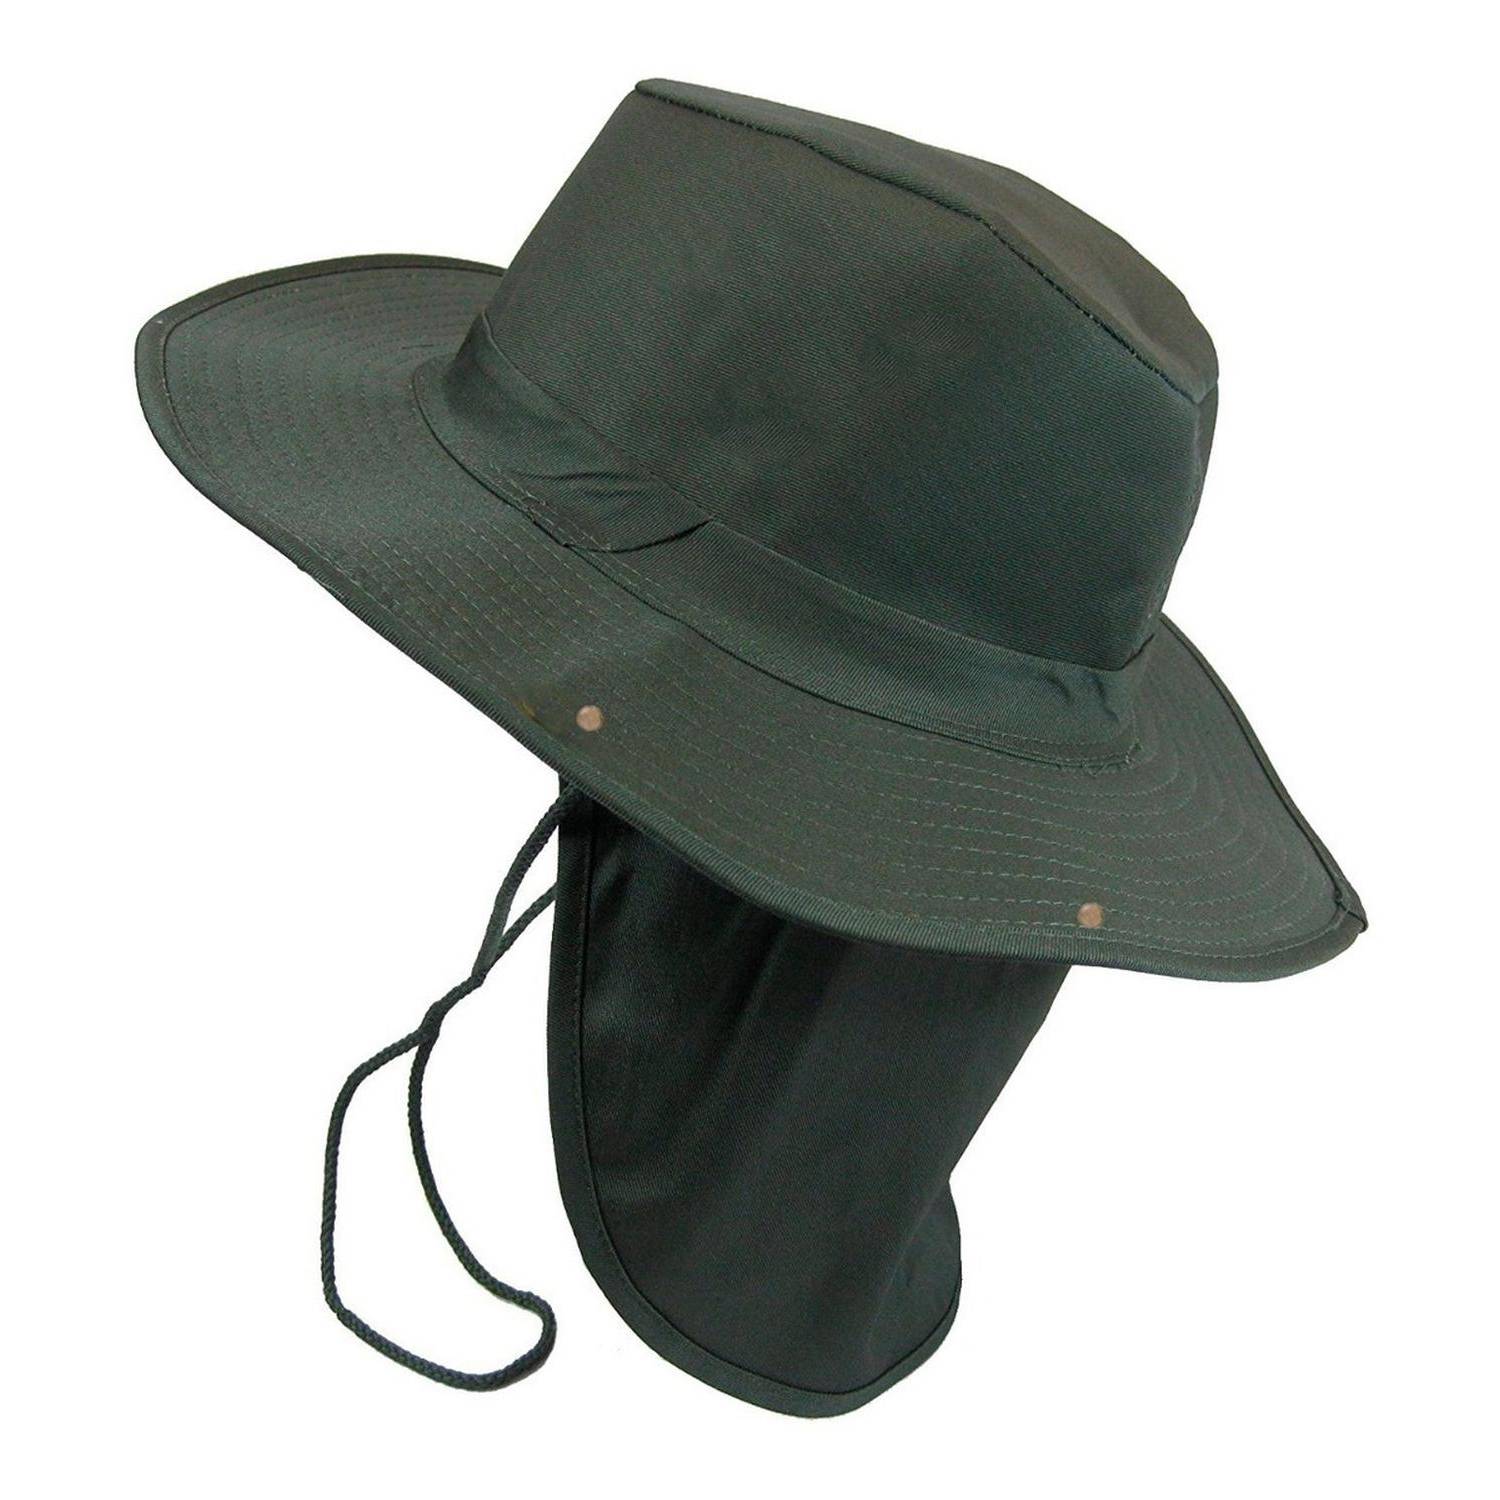 Sombrero Safari Proteccion Sol Cuello Solapa Pesca Deporte - Verde VELBROS